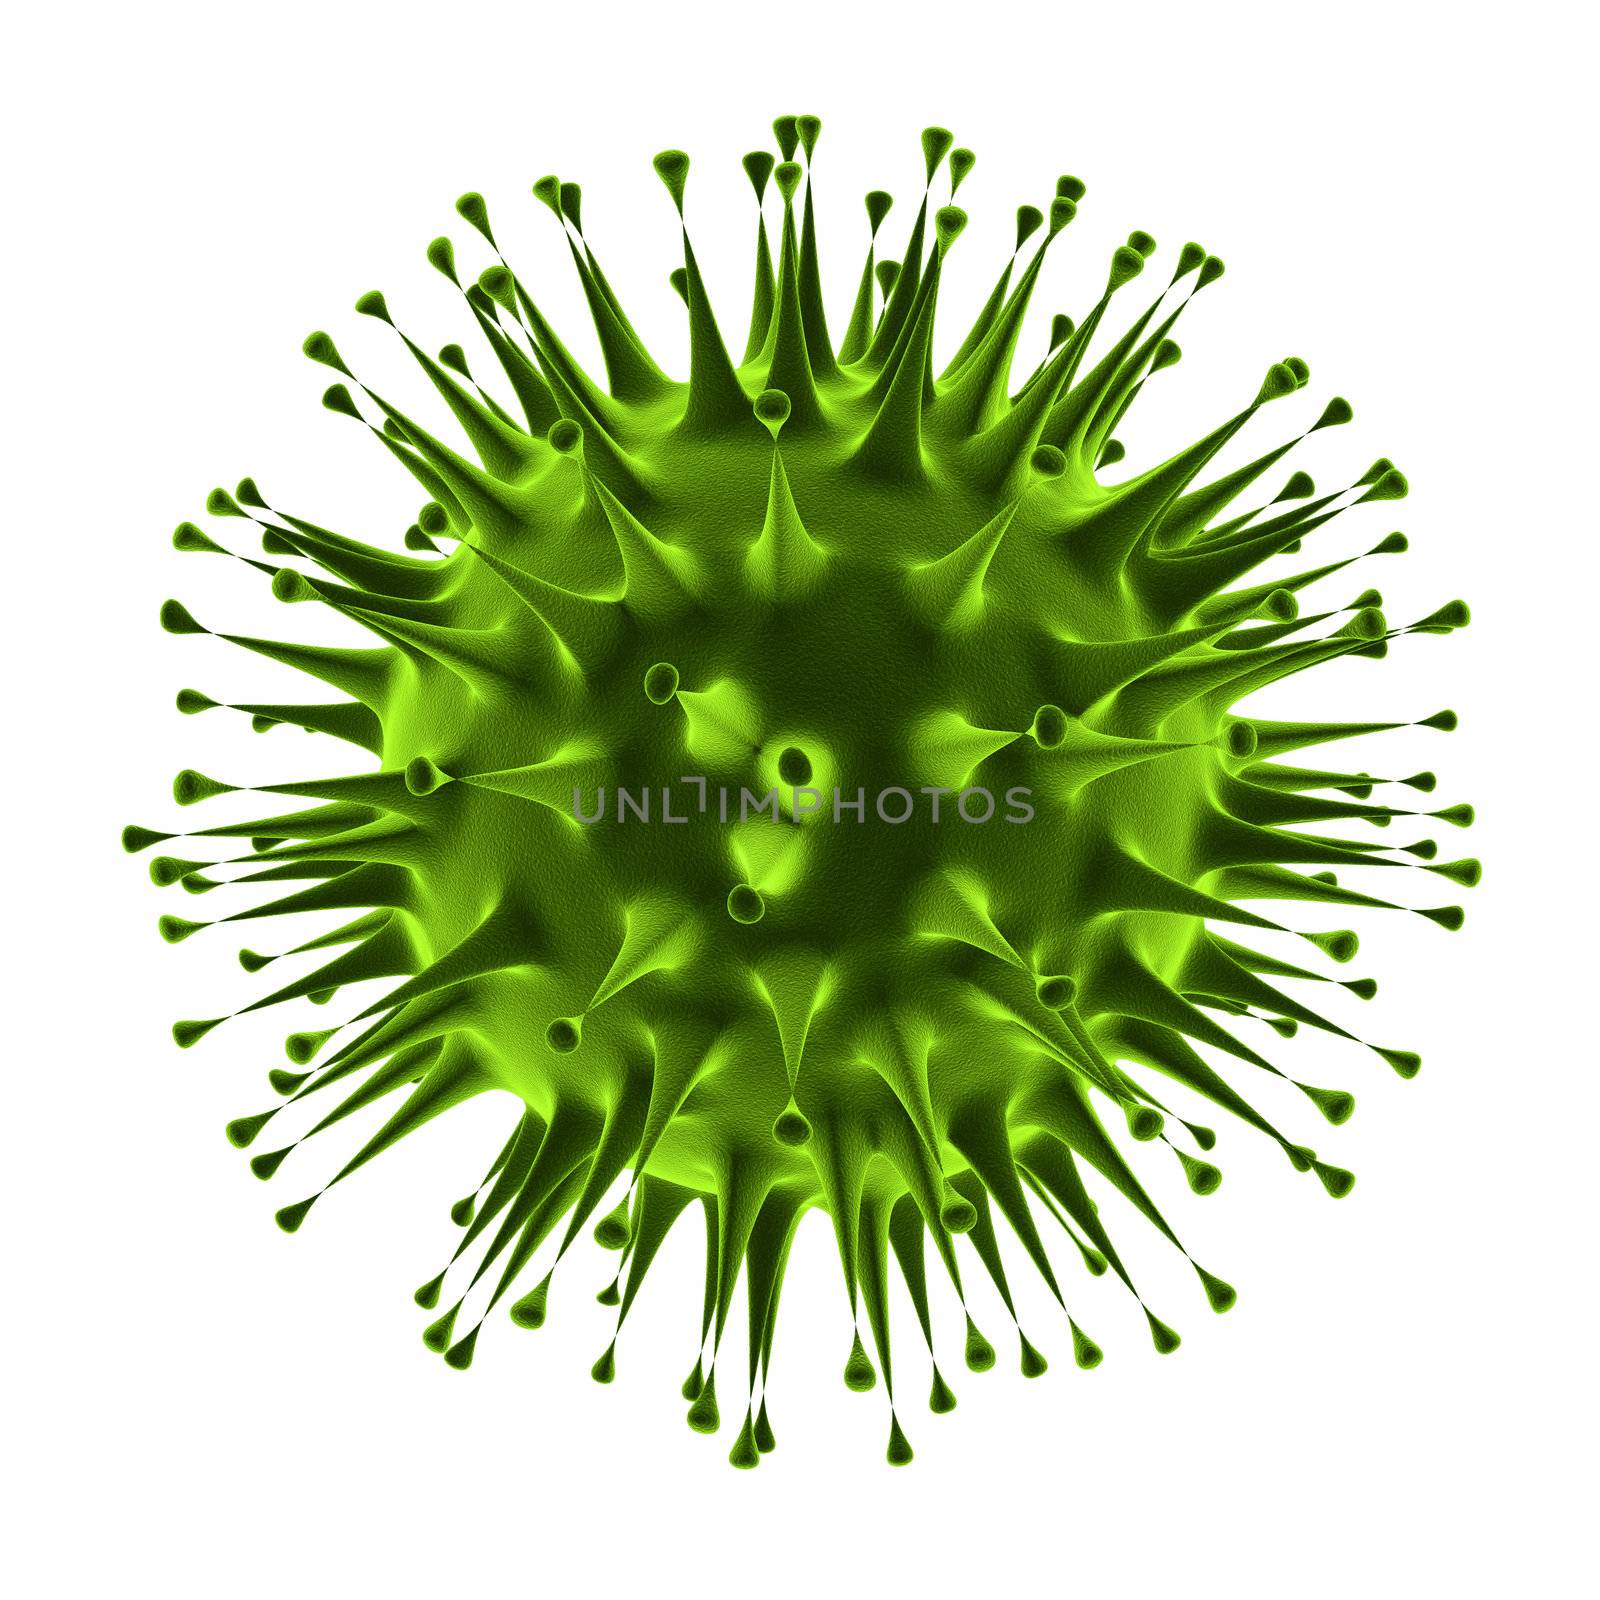 Flu virus closeup isolated on white background